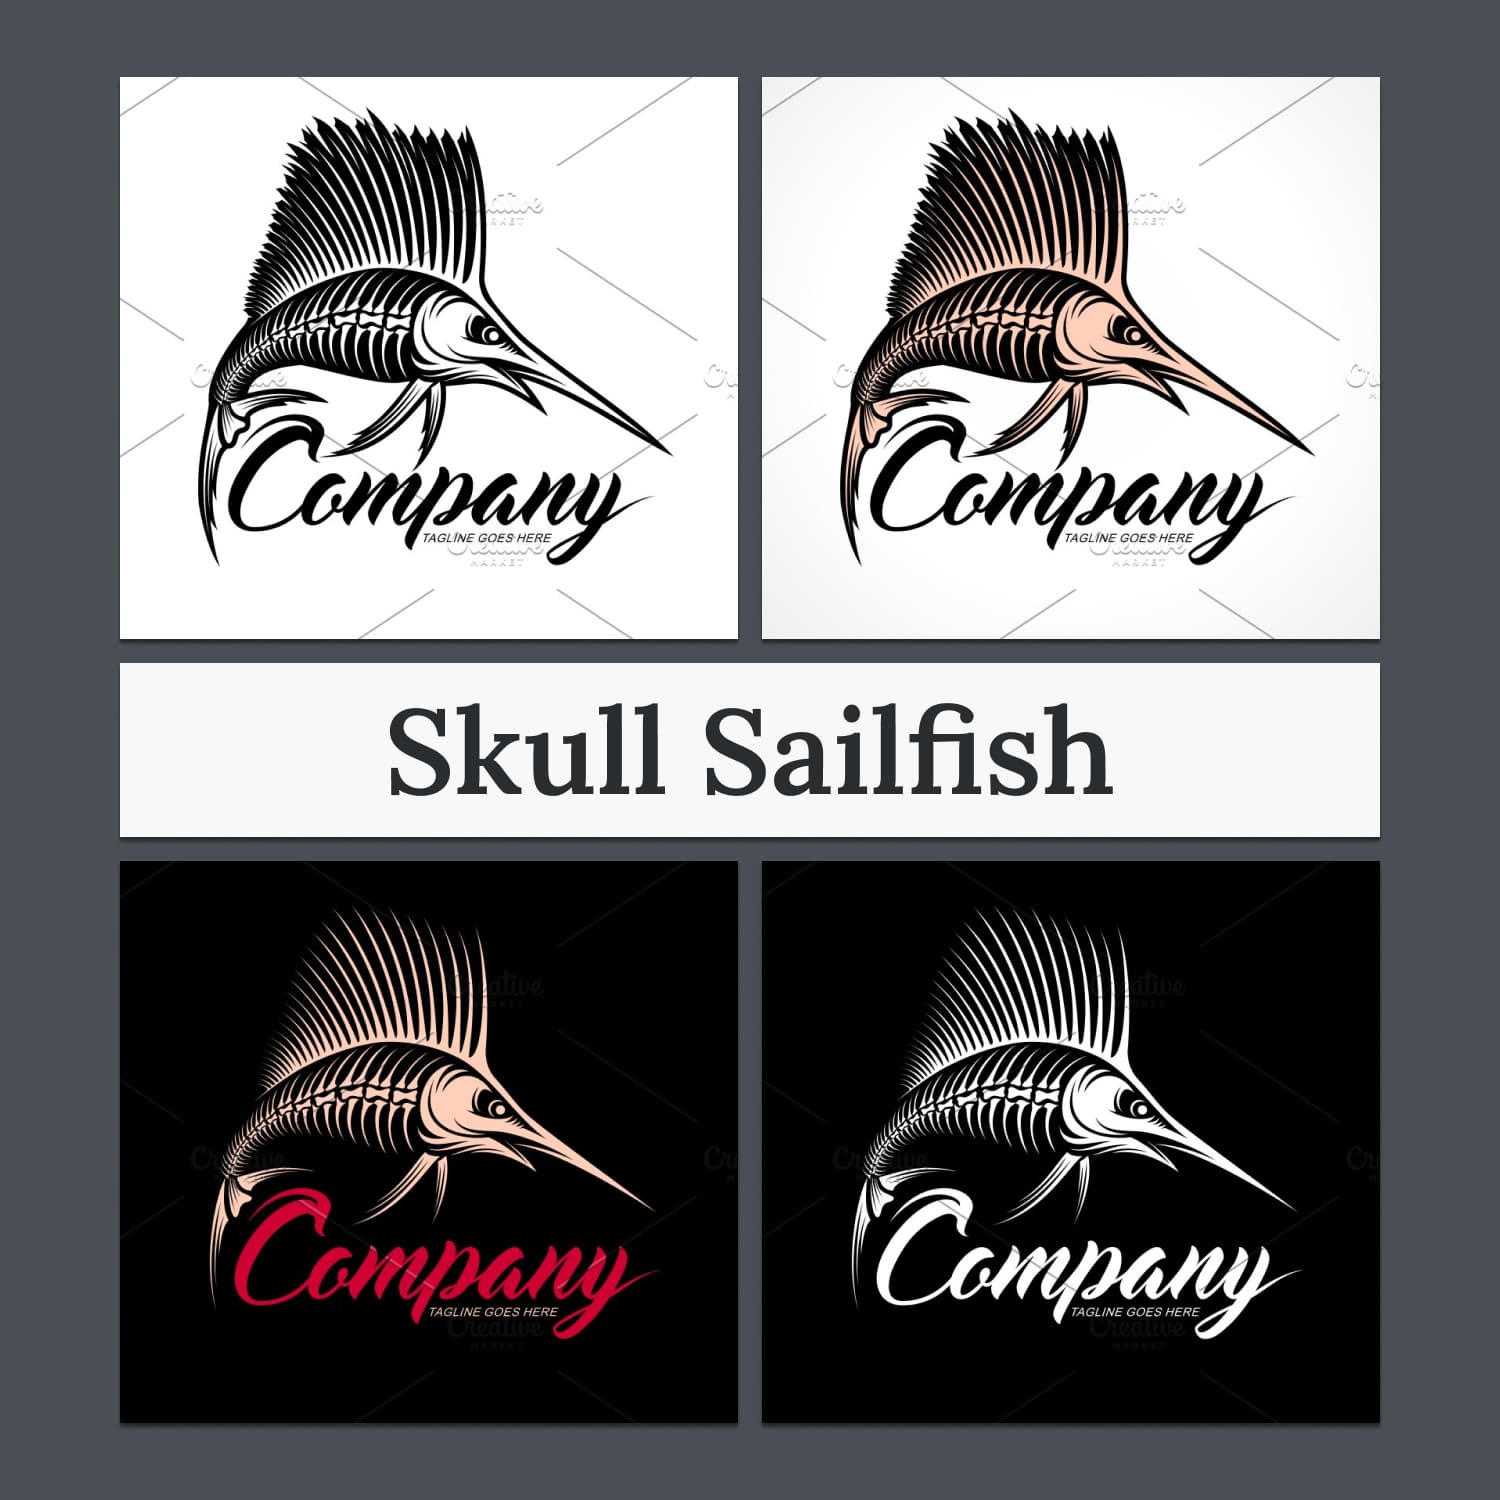 Skull Sailfish - main preview image.